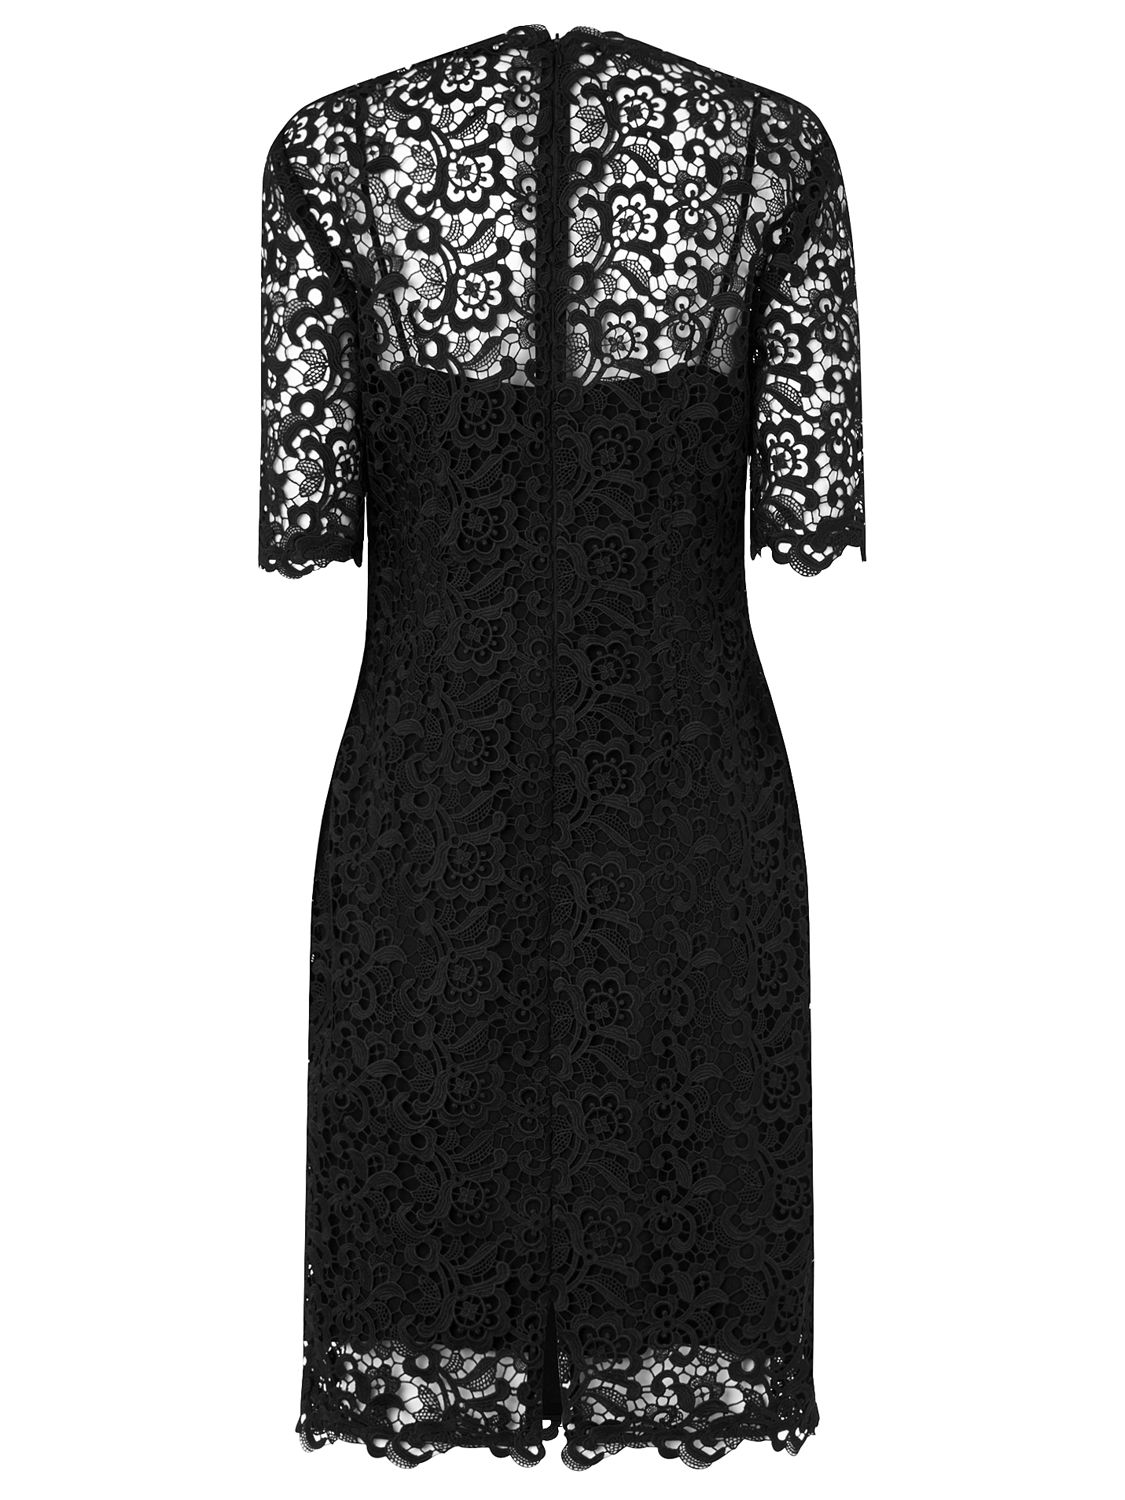 L.K. Bennett Aisha Lace Dress, Black